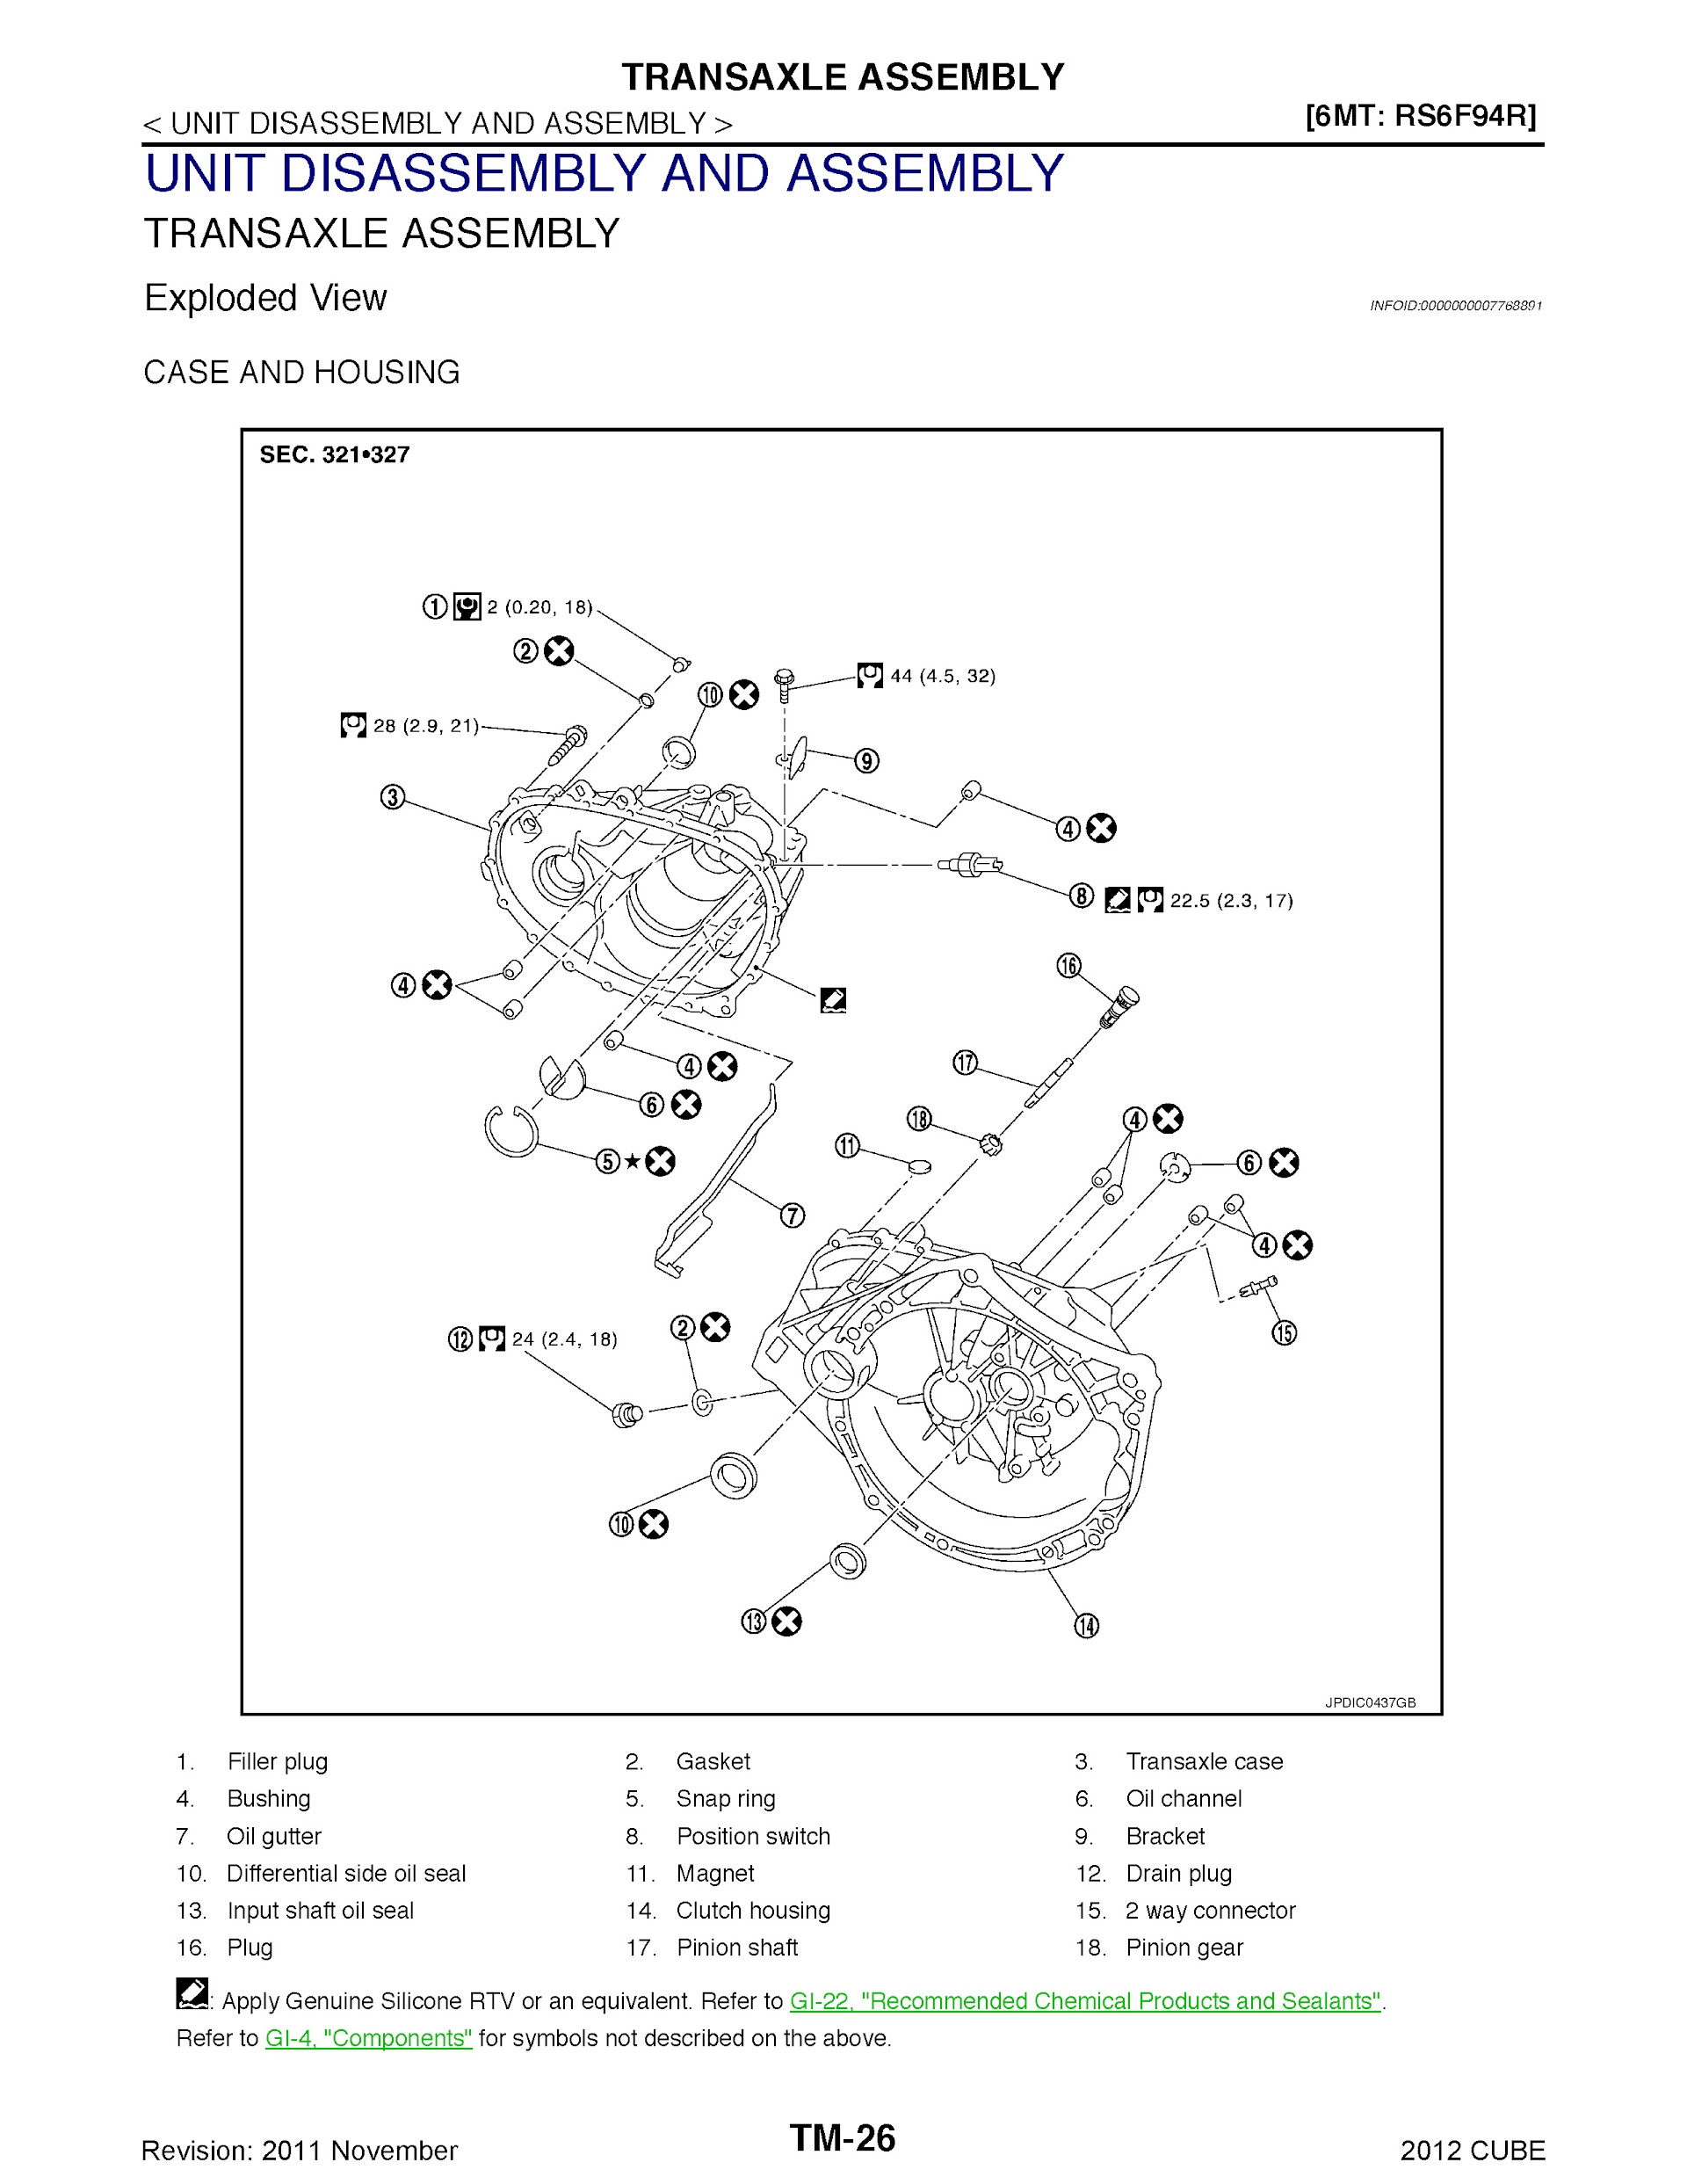 Download 2012 Nissan Cube Repair Manual.